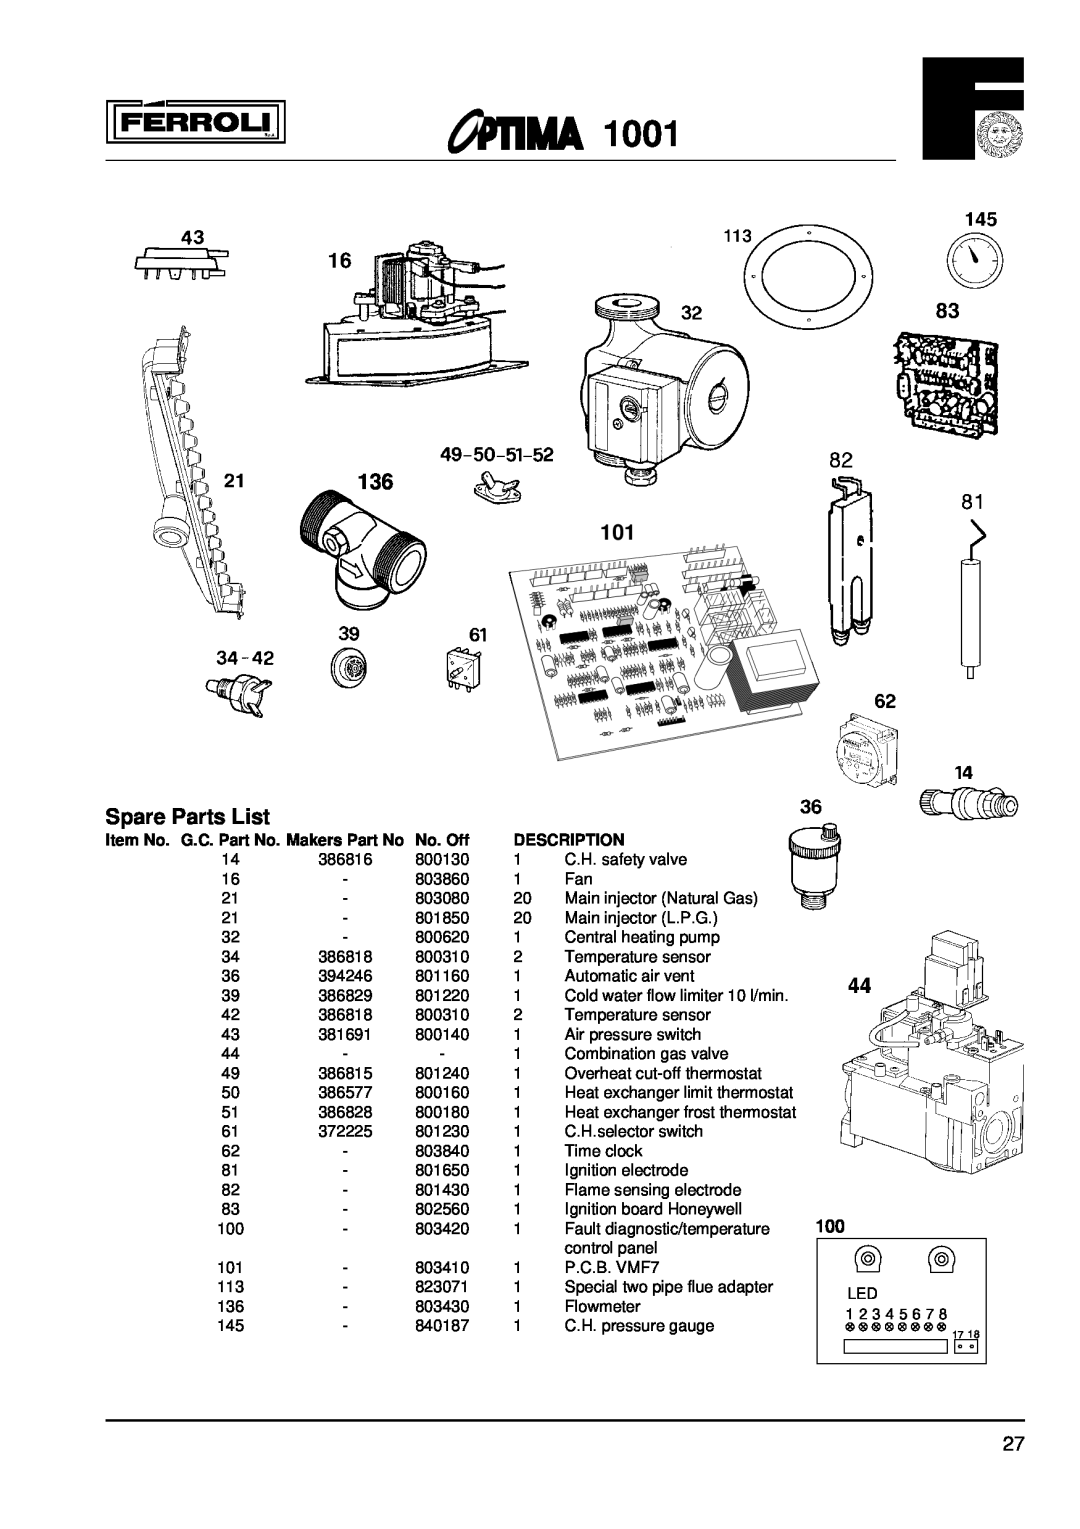 Optima Company 1001 136, Spare Parts List, Item No. G.C. Part No. Makers Part No, No. Off, Description 